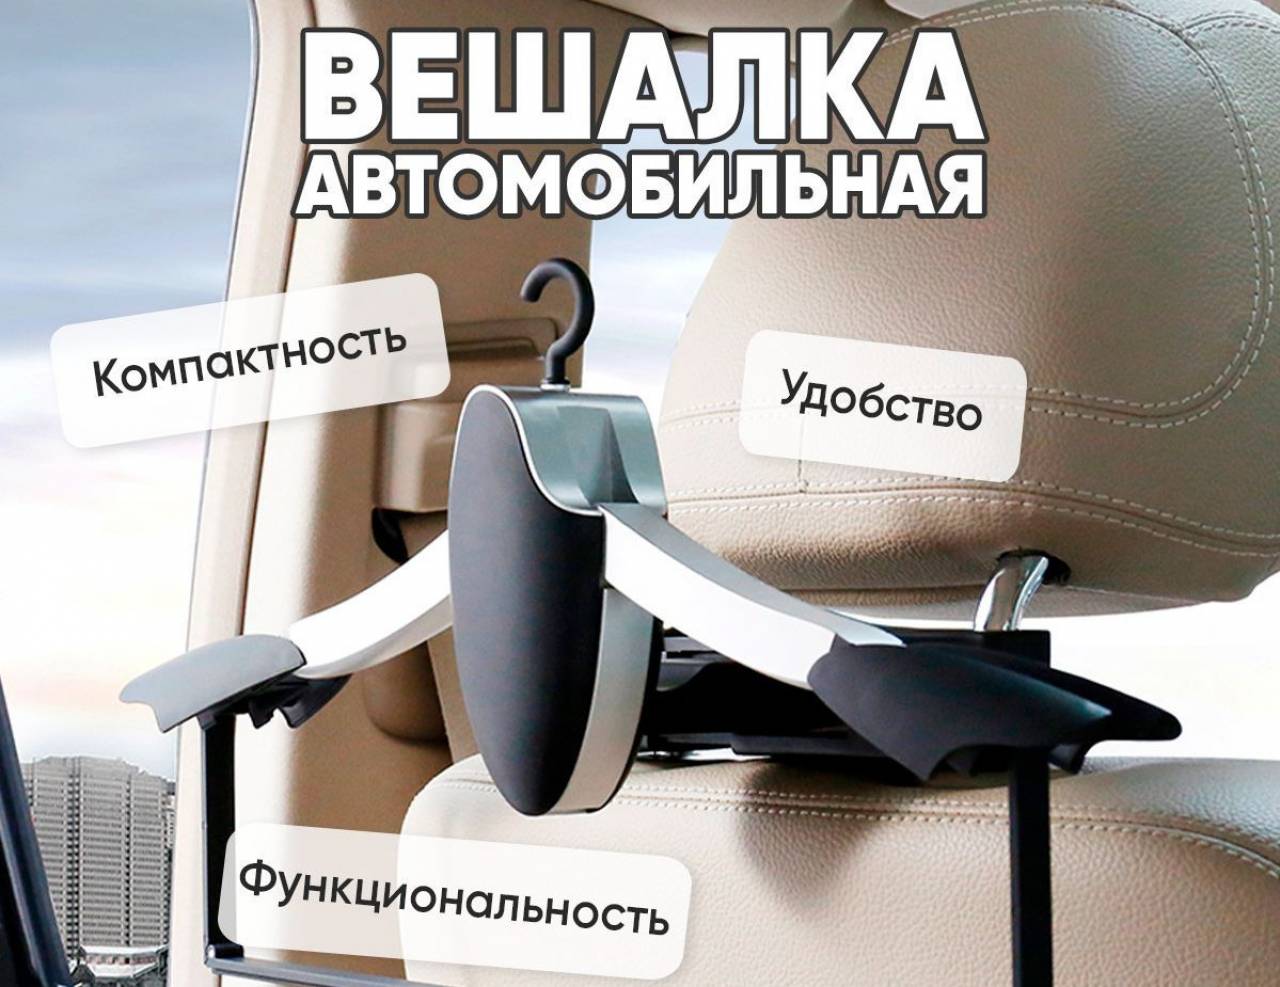 Еще один белорус-«вешалка» столкнулся с суровой реальностью: налоговая потребовала от него уплатить более 50 тыс. рублей за оформленное на него при ввозе авто